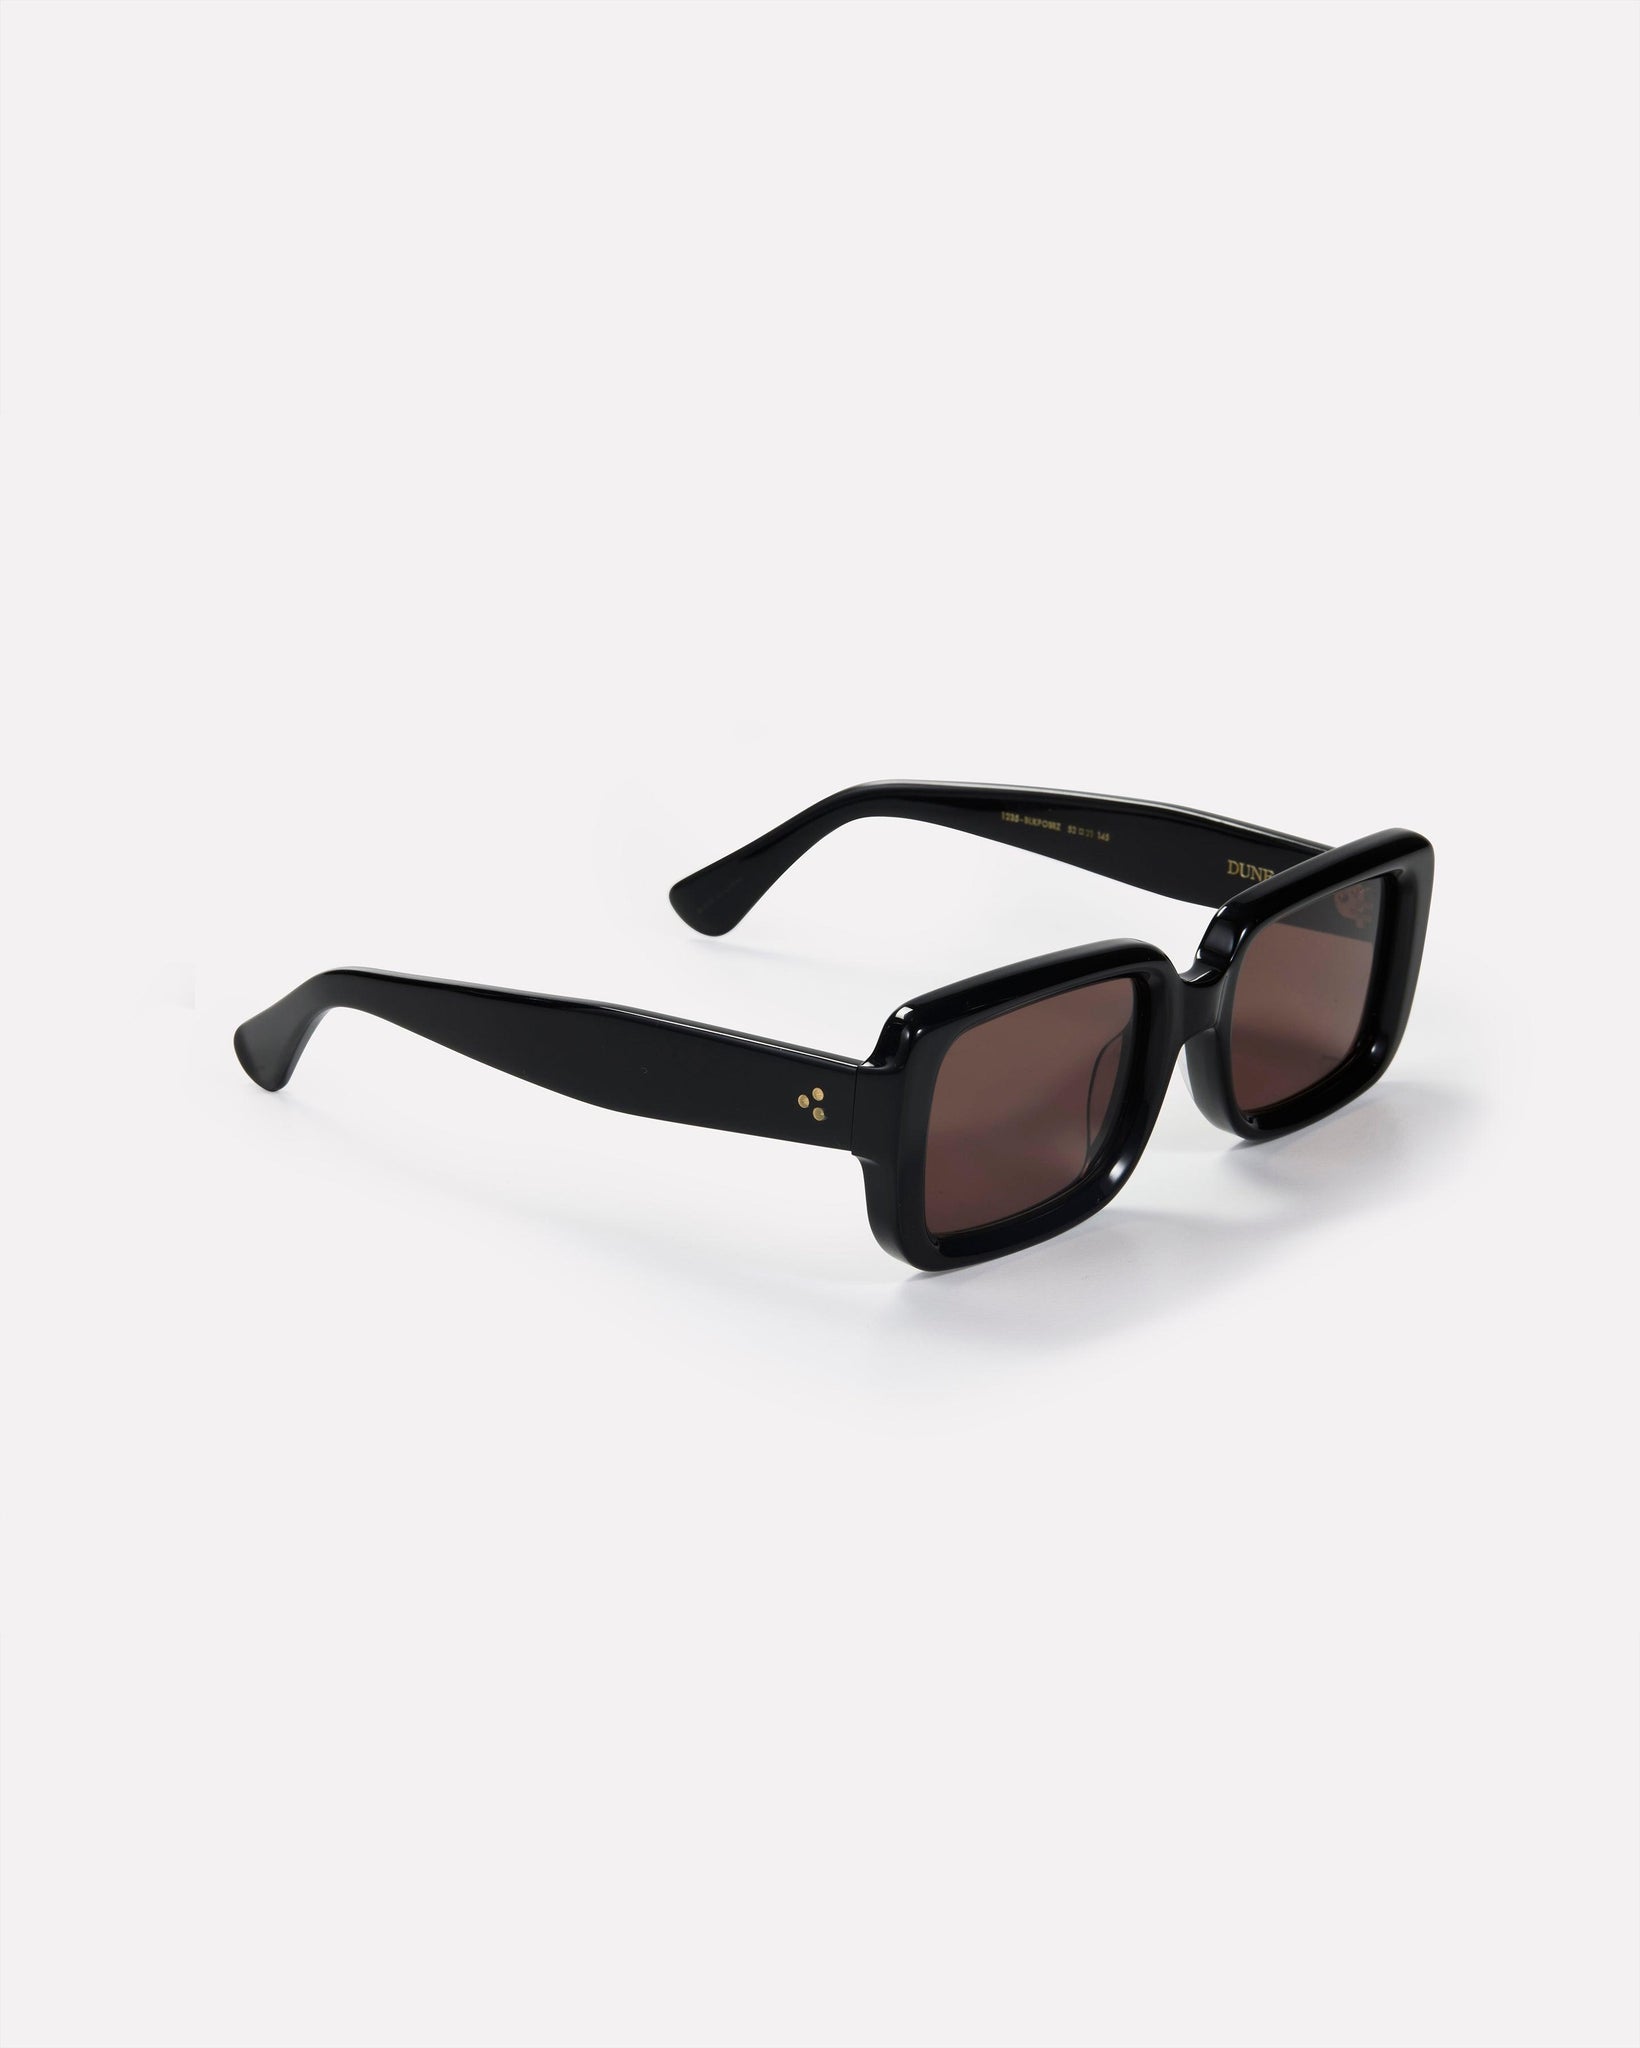 Dune - Black Polished / Bronze - Sunglasses - EPOKHE EYEWEAR